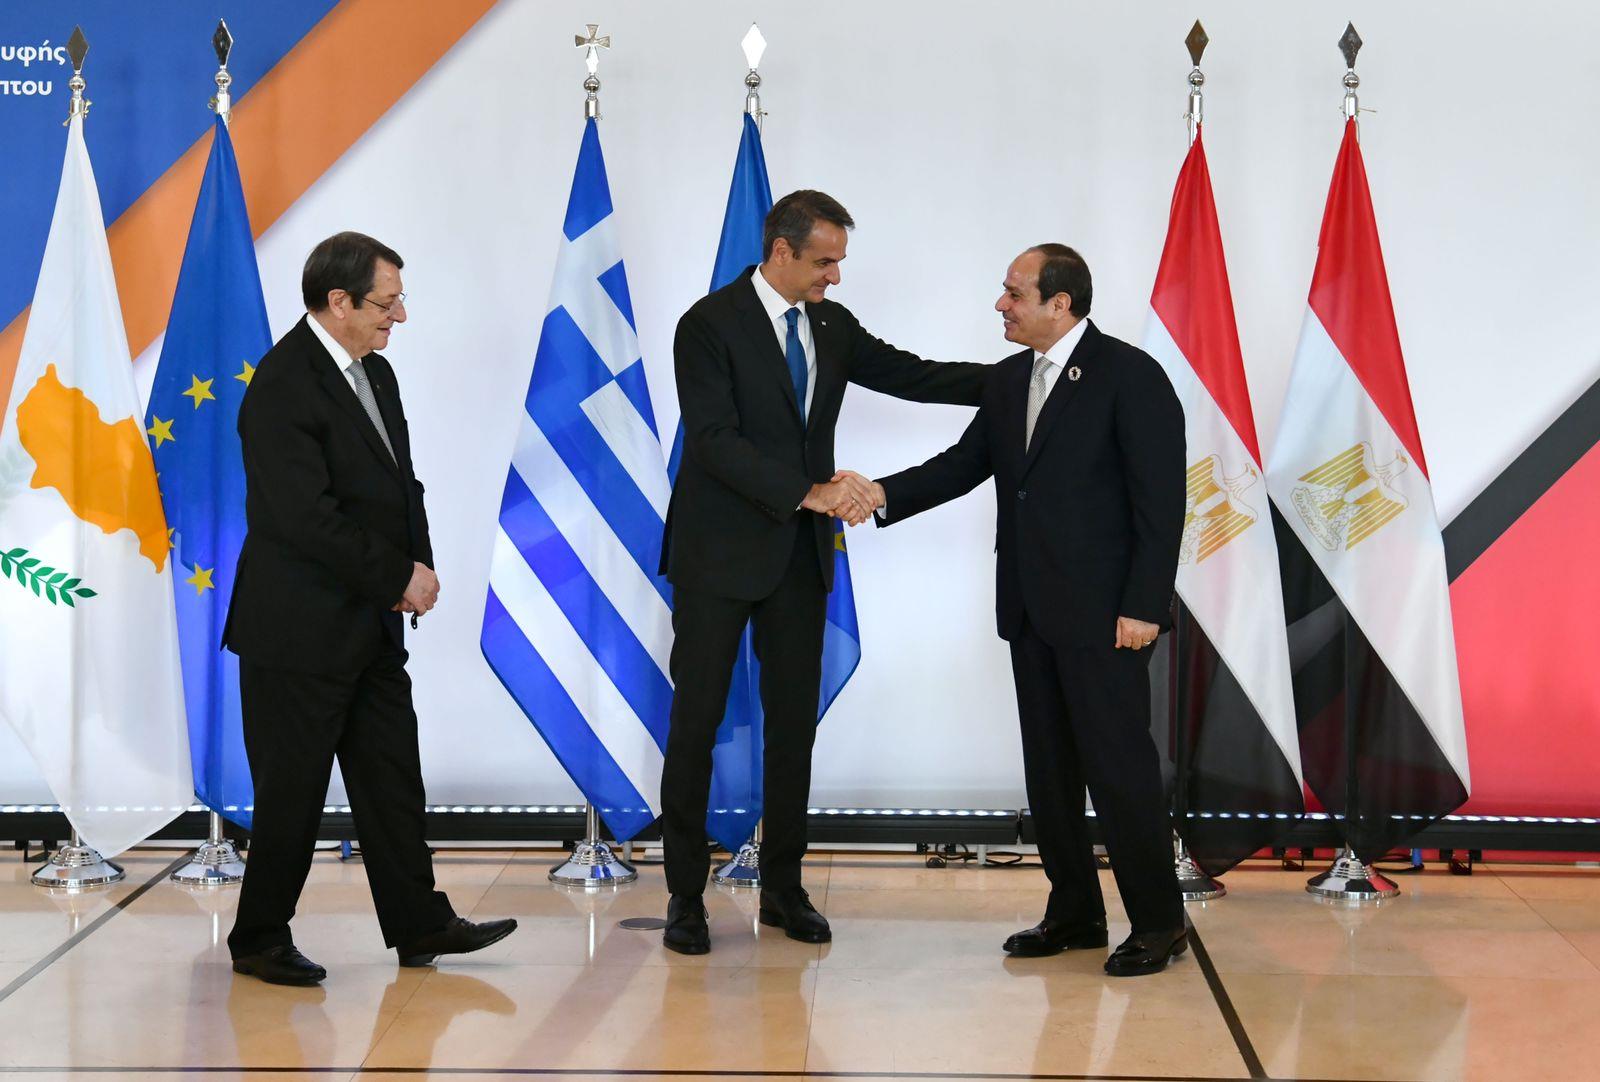 القمة الثلاثية بين مصر وقبرص واليونان  ووصول الرئيس السيسي العاصمة اليونانية أثينا